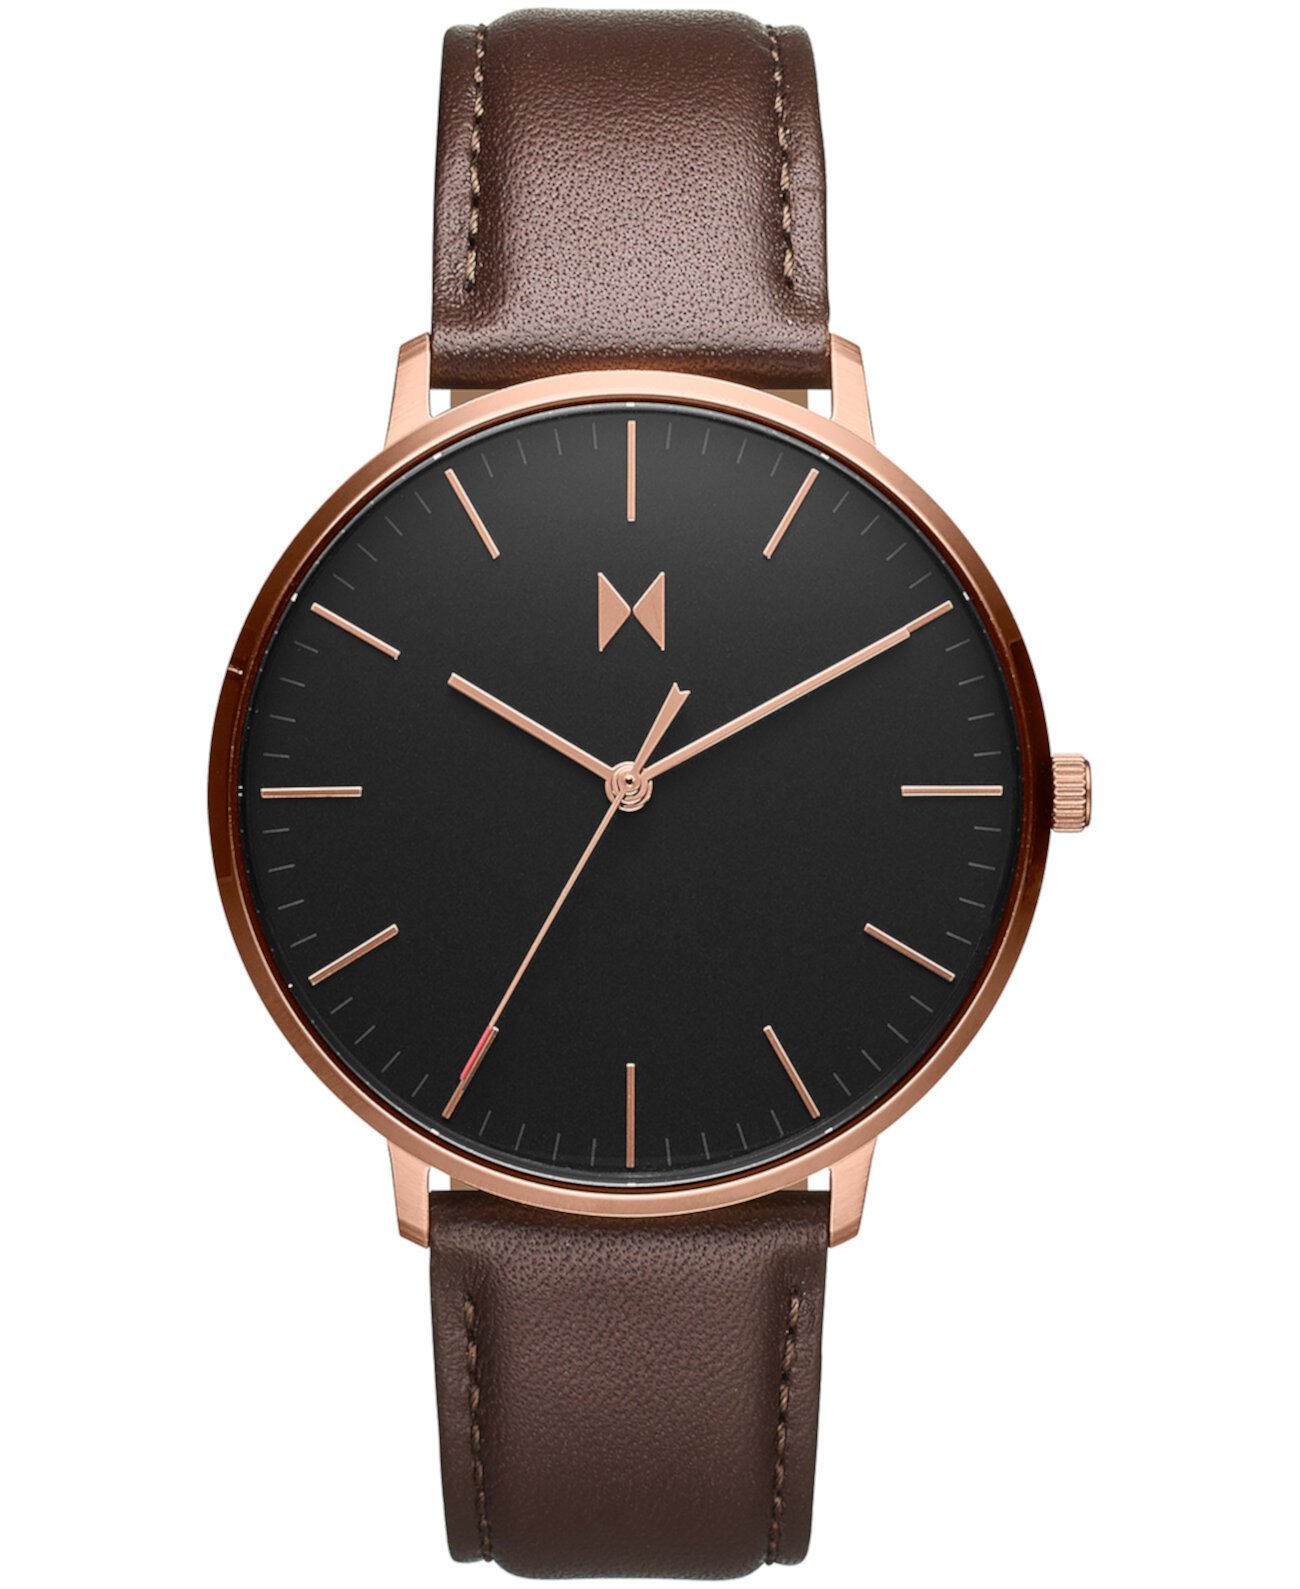 Мужские наручные часы Legacy с тонким коричневым кожаным ремешком, 42 мм MVMT